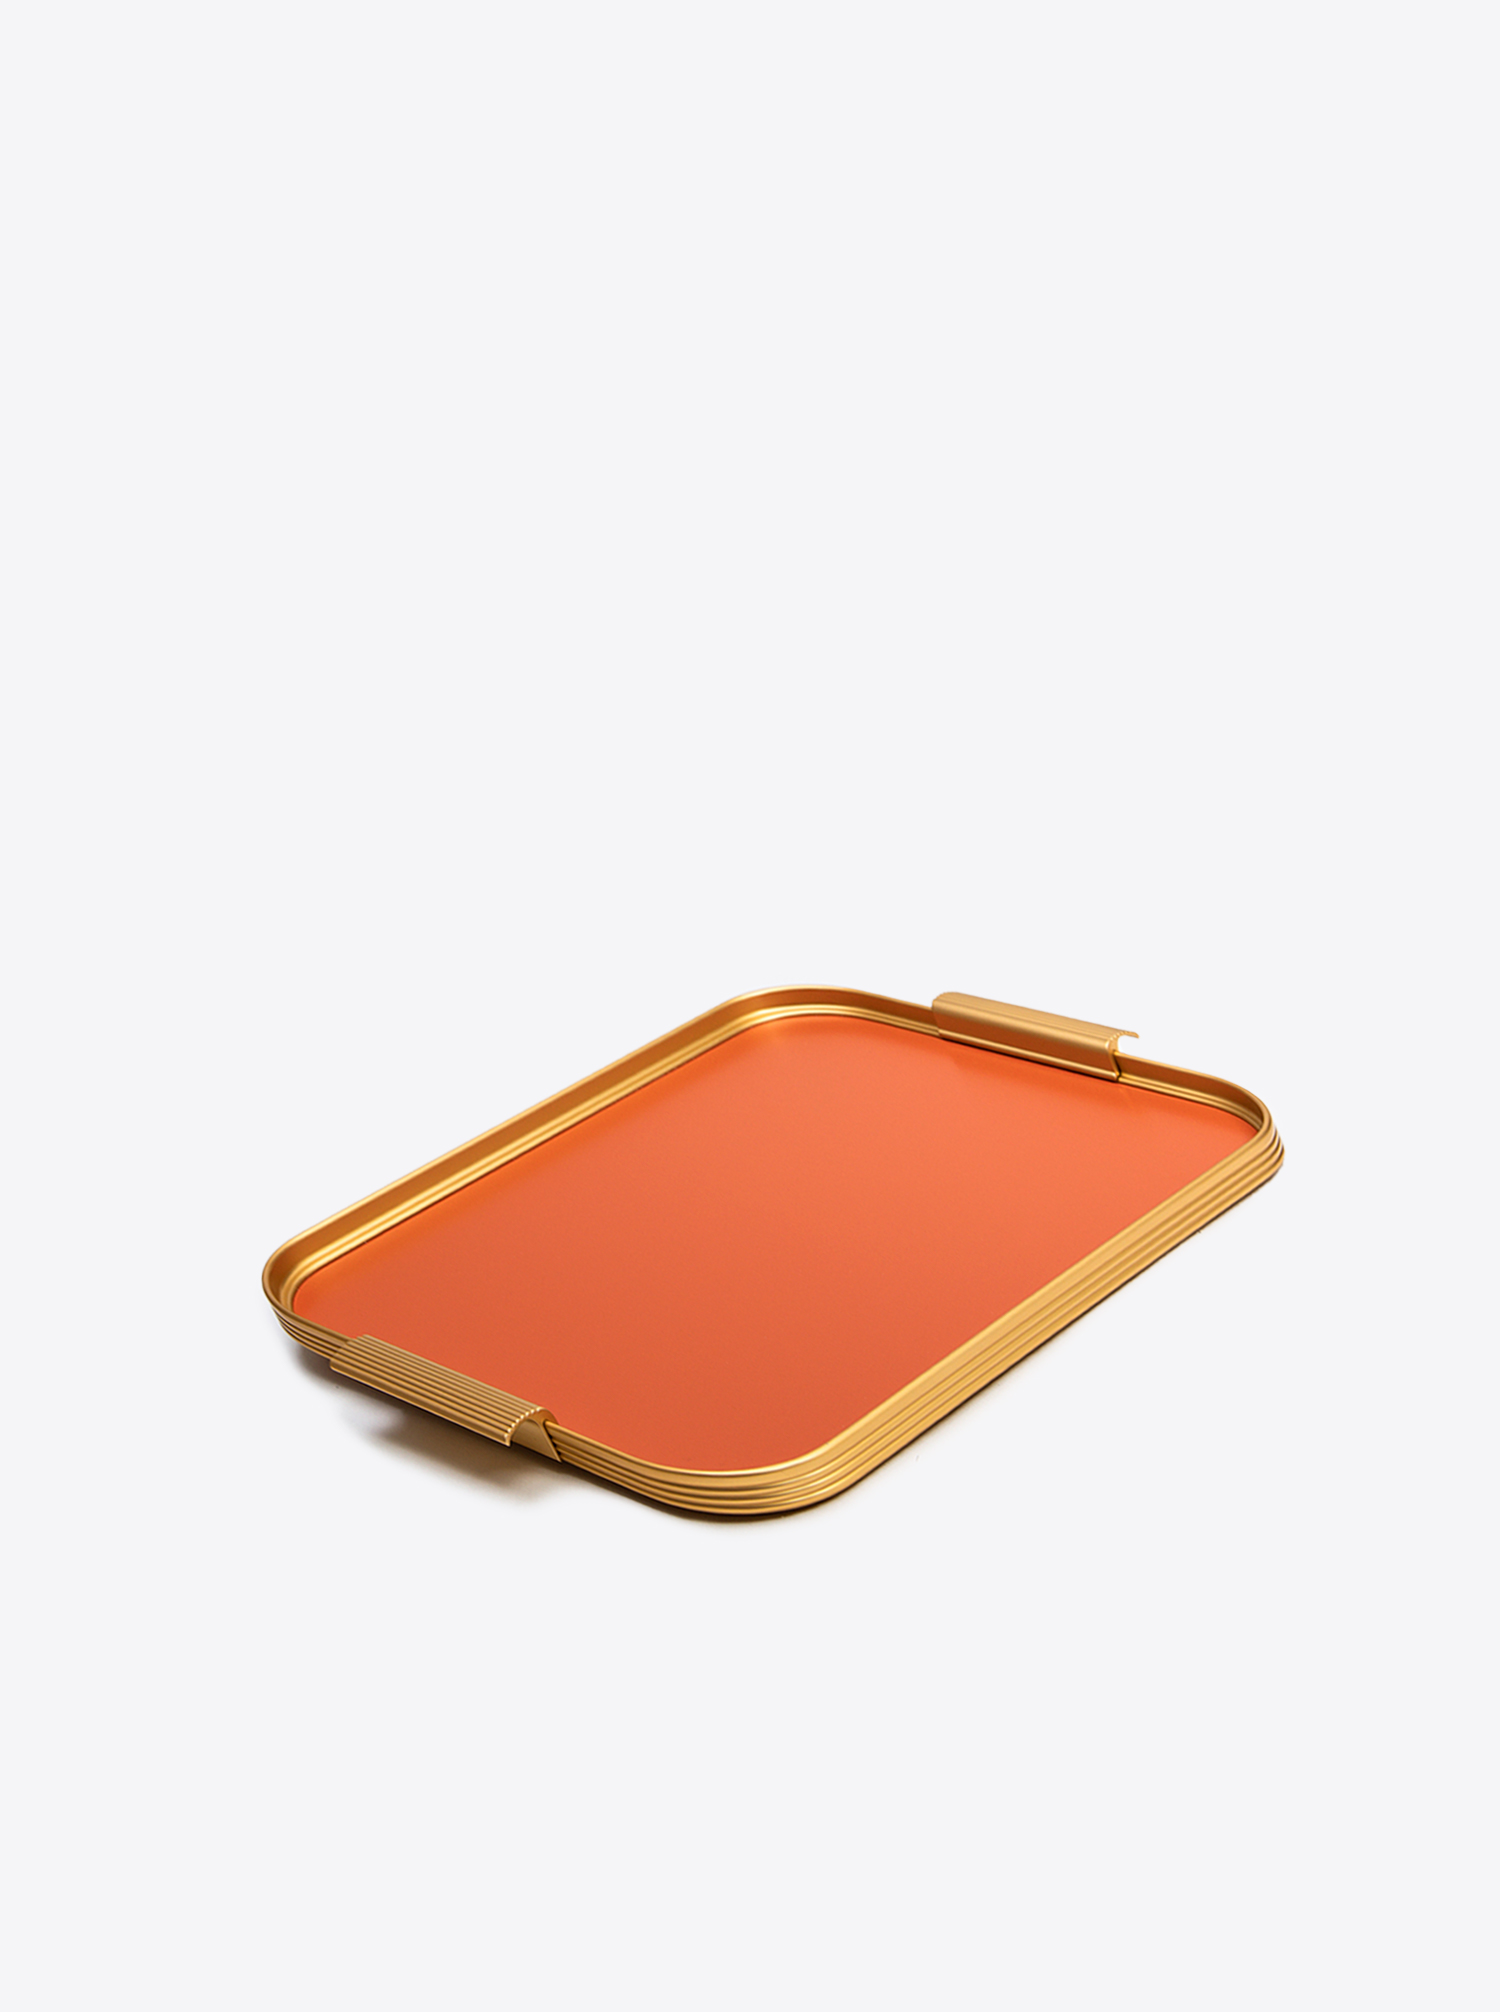 Tray Aluminium M 35 x 25,5cm in Burnt Orange / Gold